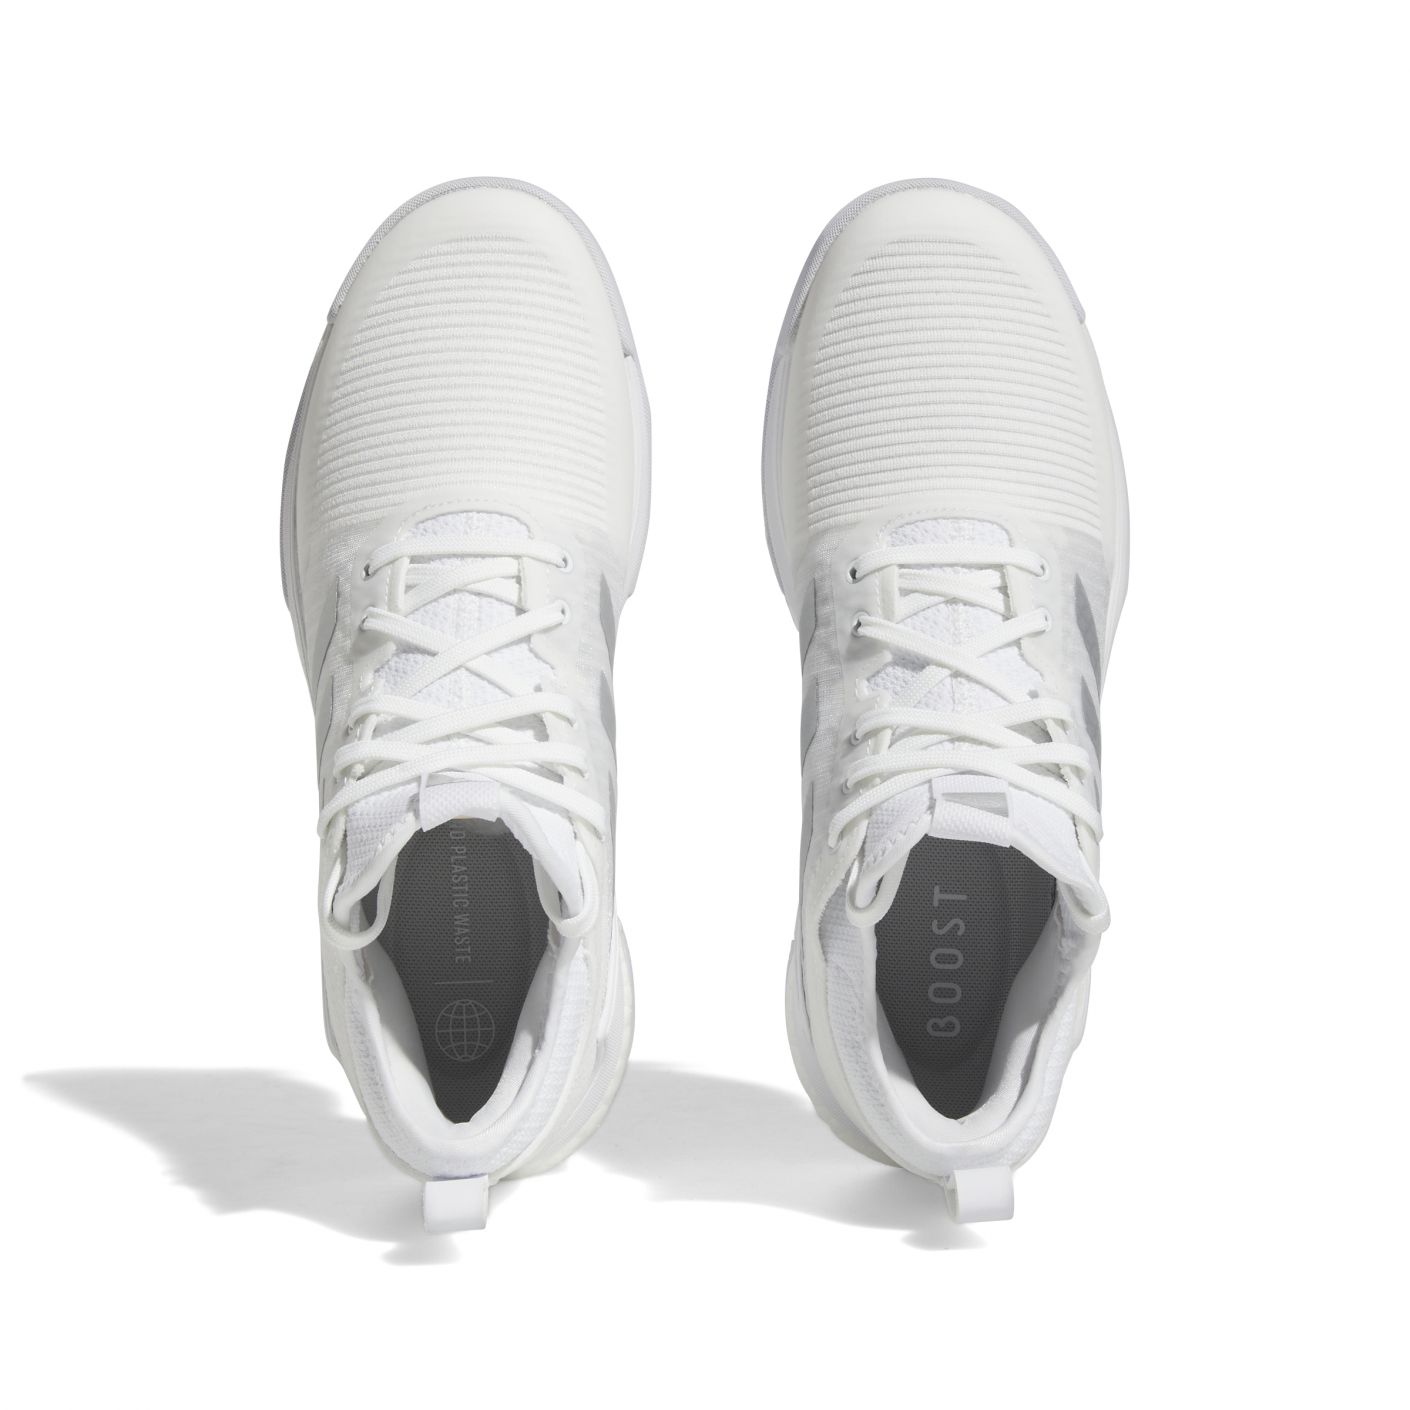 Adidas Crazyflight Mid Total White